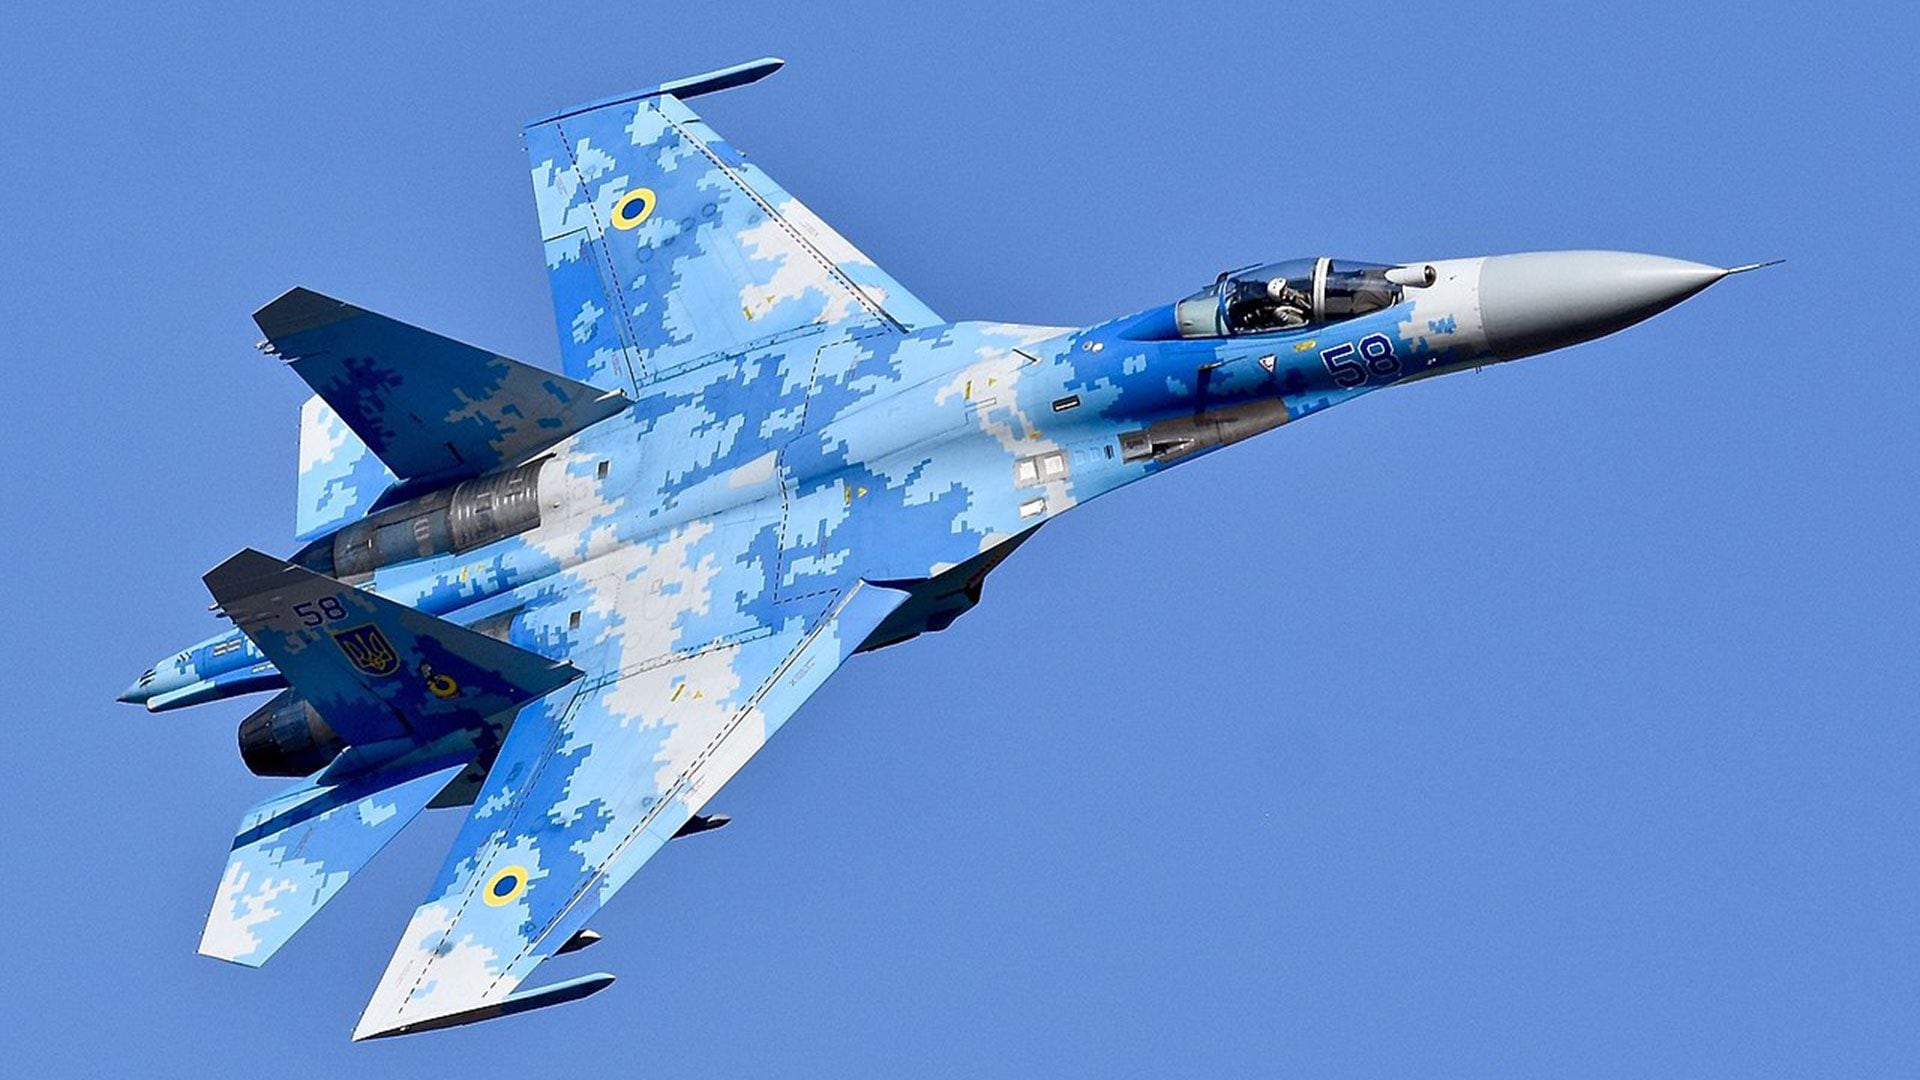 El caza ruso Su-27 Flanker, el modelo de avión con el que dispararon los misiles contra la aeronave británica. Captura